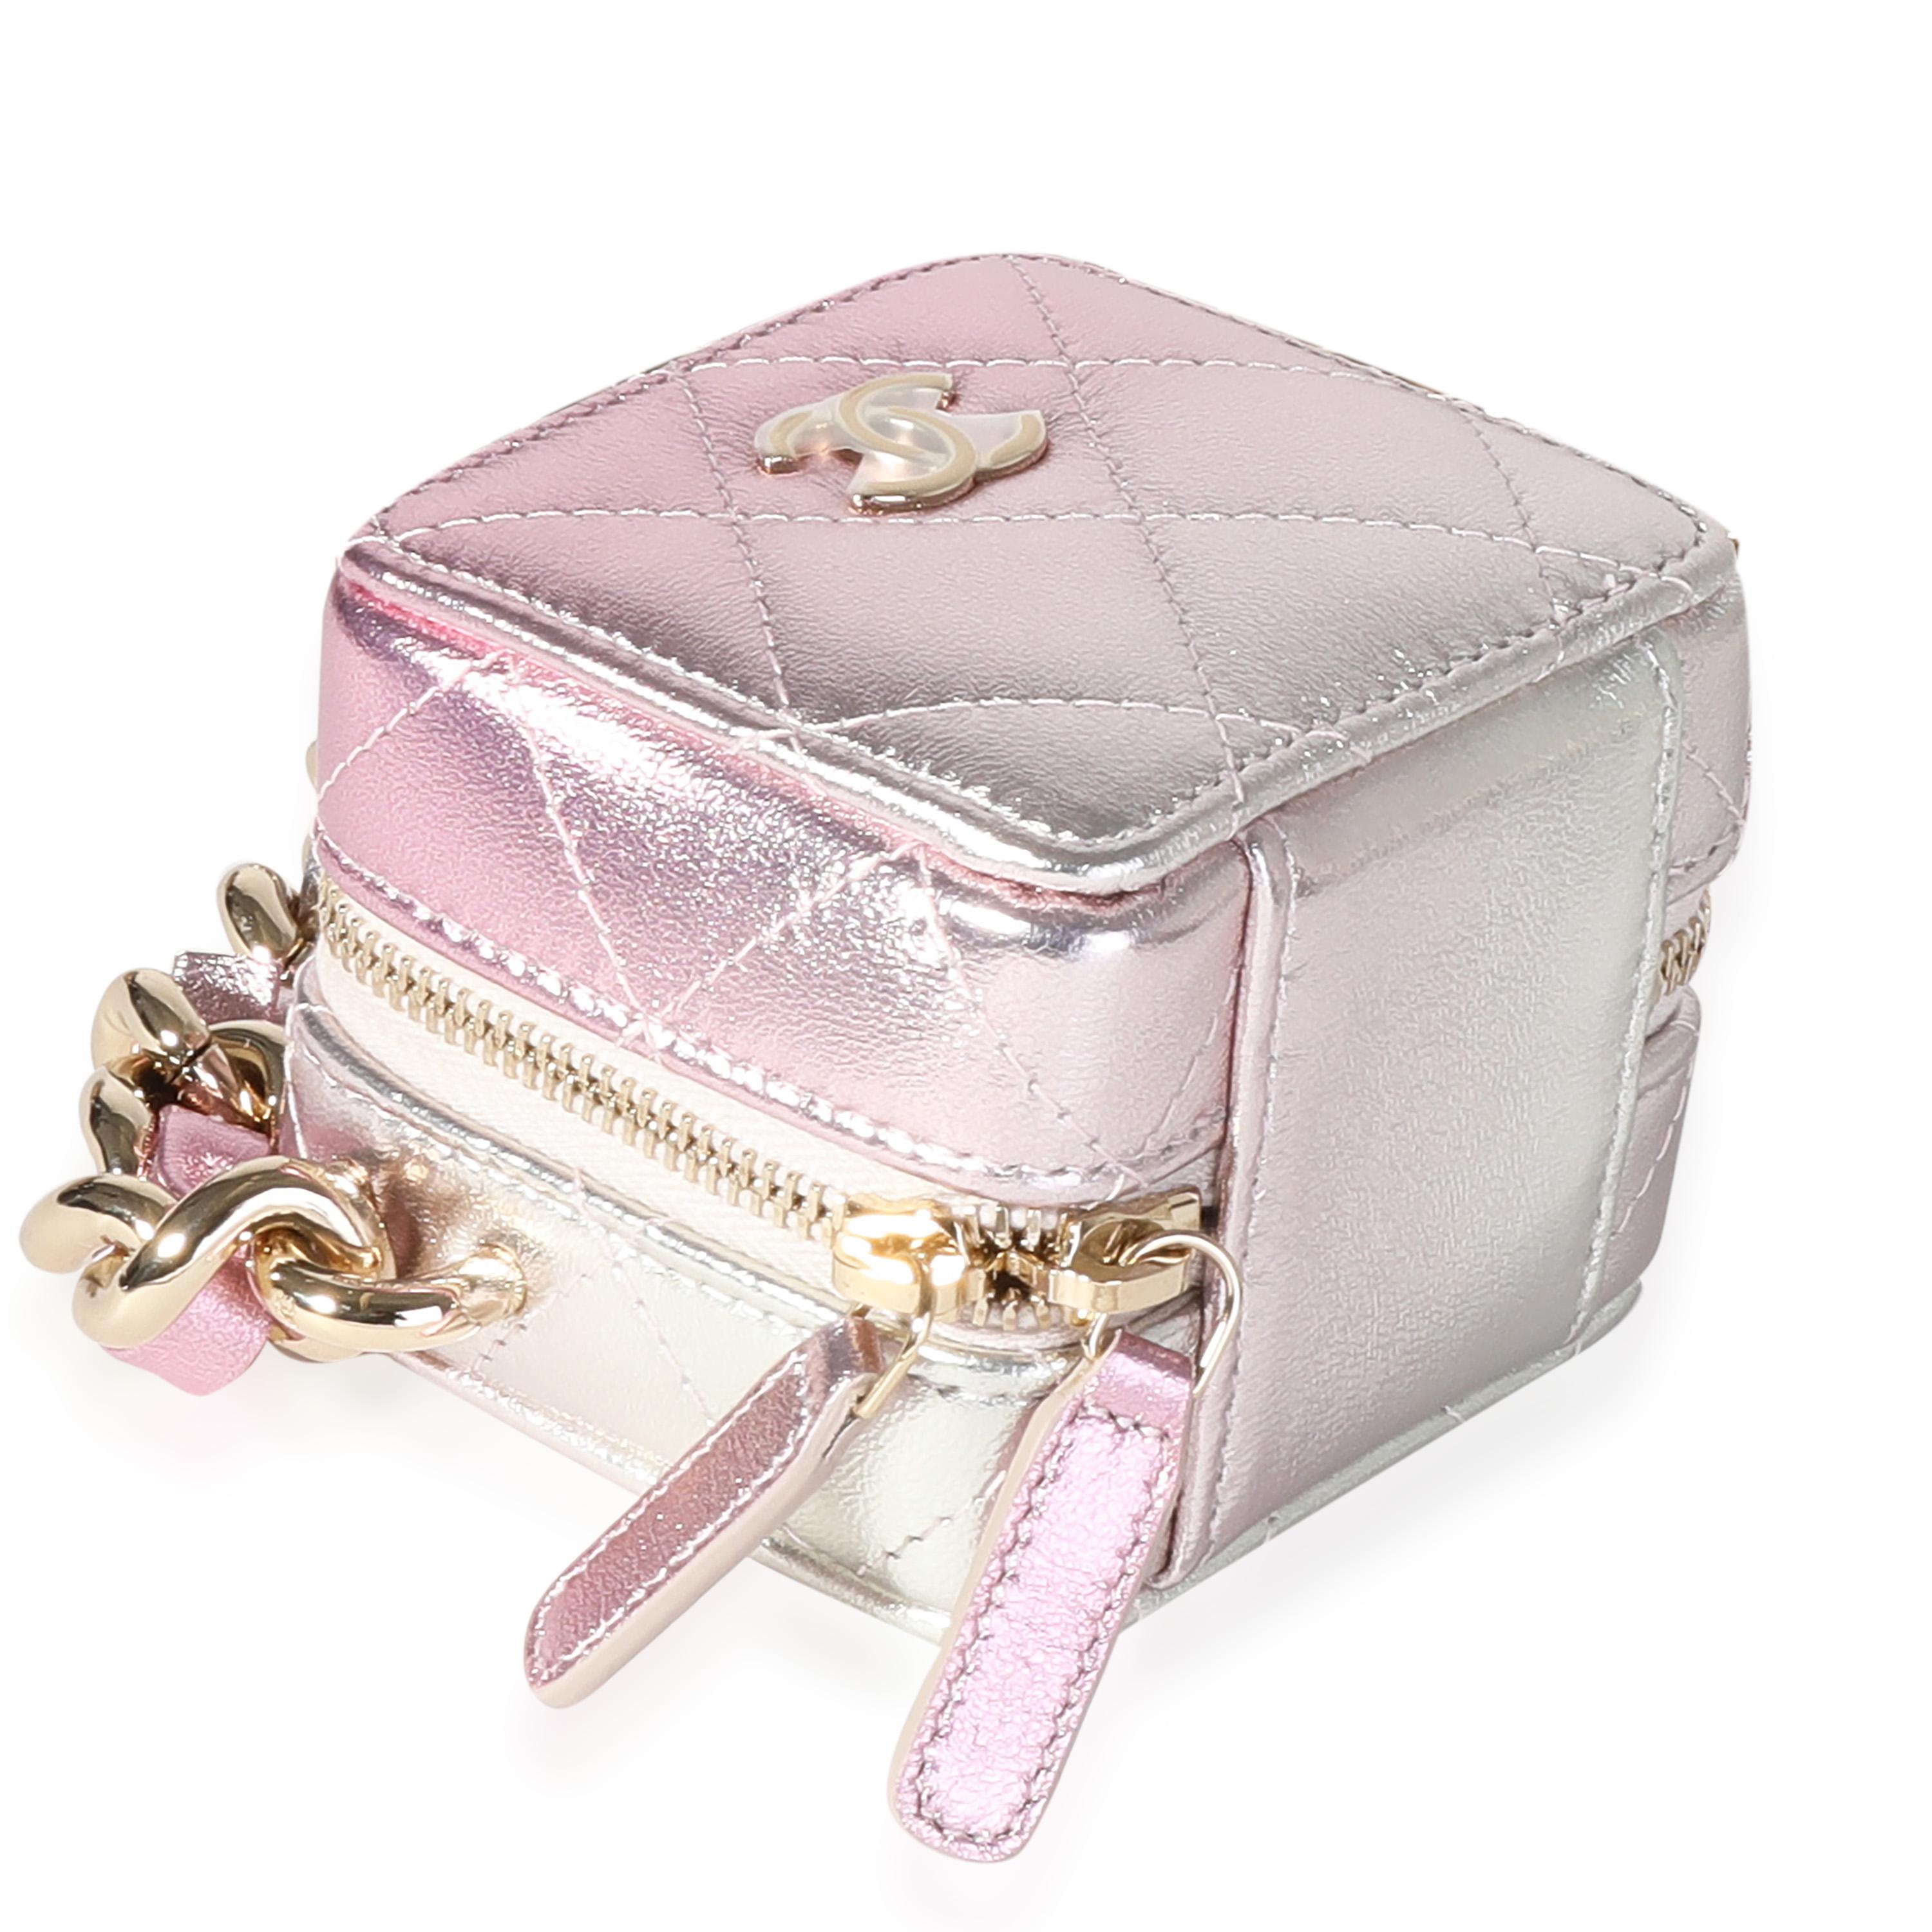 Titre du listing : Chanel Metallic Lambskin Quilted Coco Punk Cube Bag With Chain
SKU : 122116
Condit : Usagé 
Condition du sac à main : Excellent
Commentaires sur l'état : Excellent état. Un peu de plastique au niveau de la quincaillerie. Légères